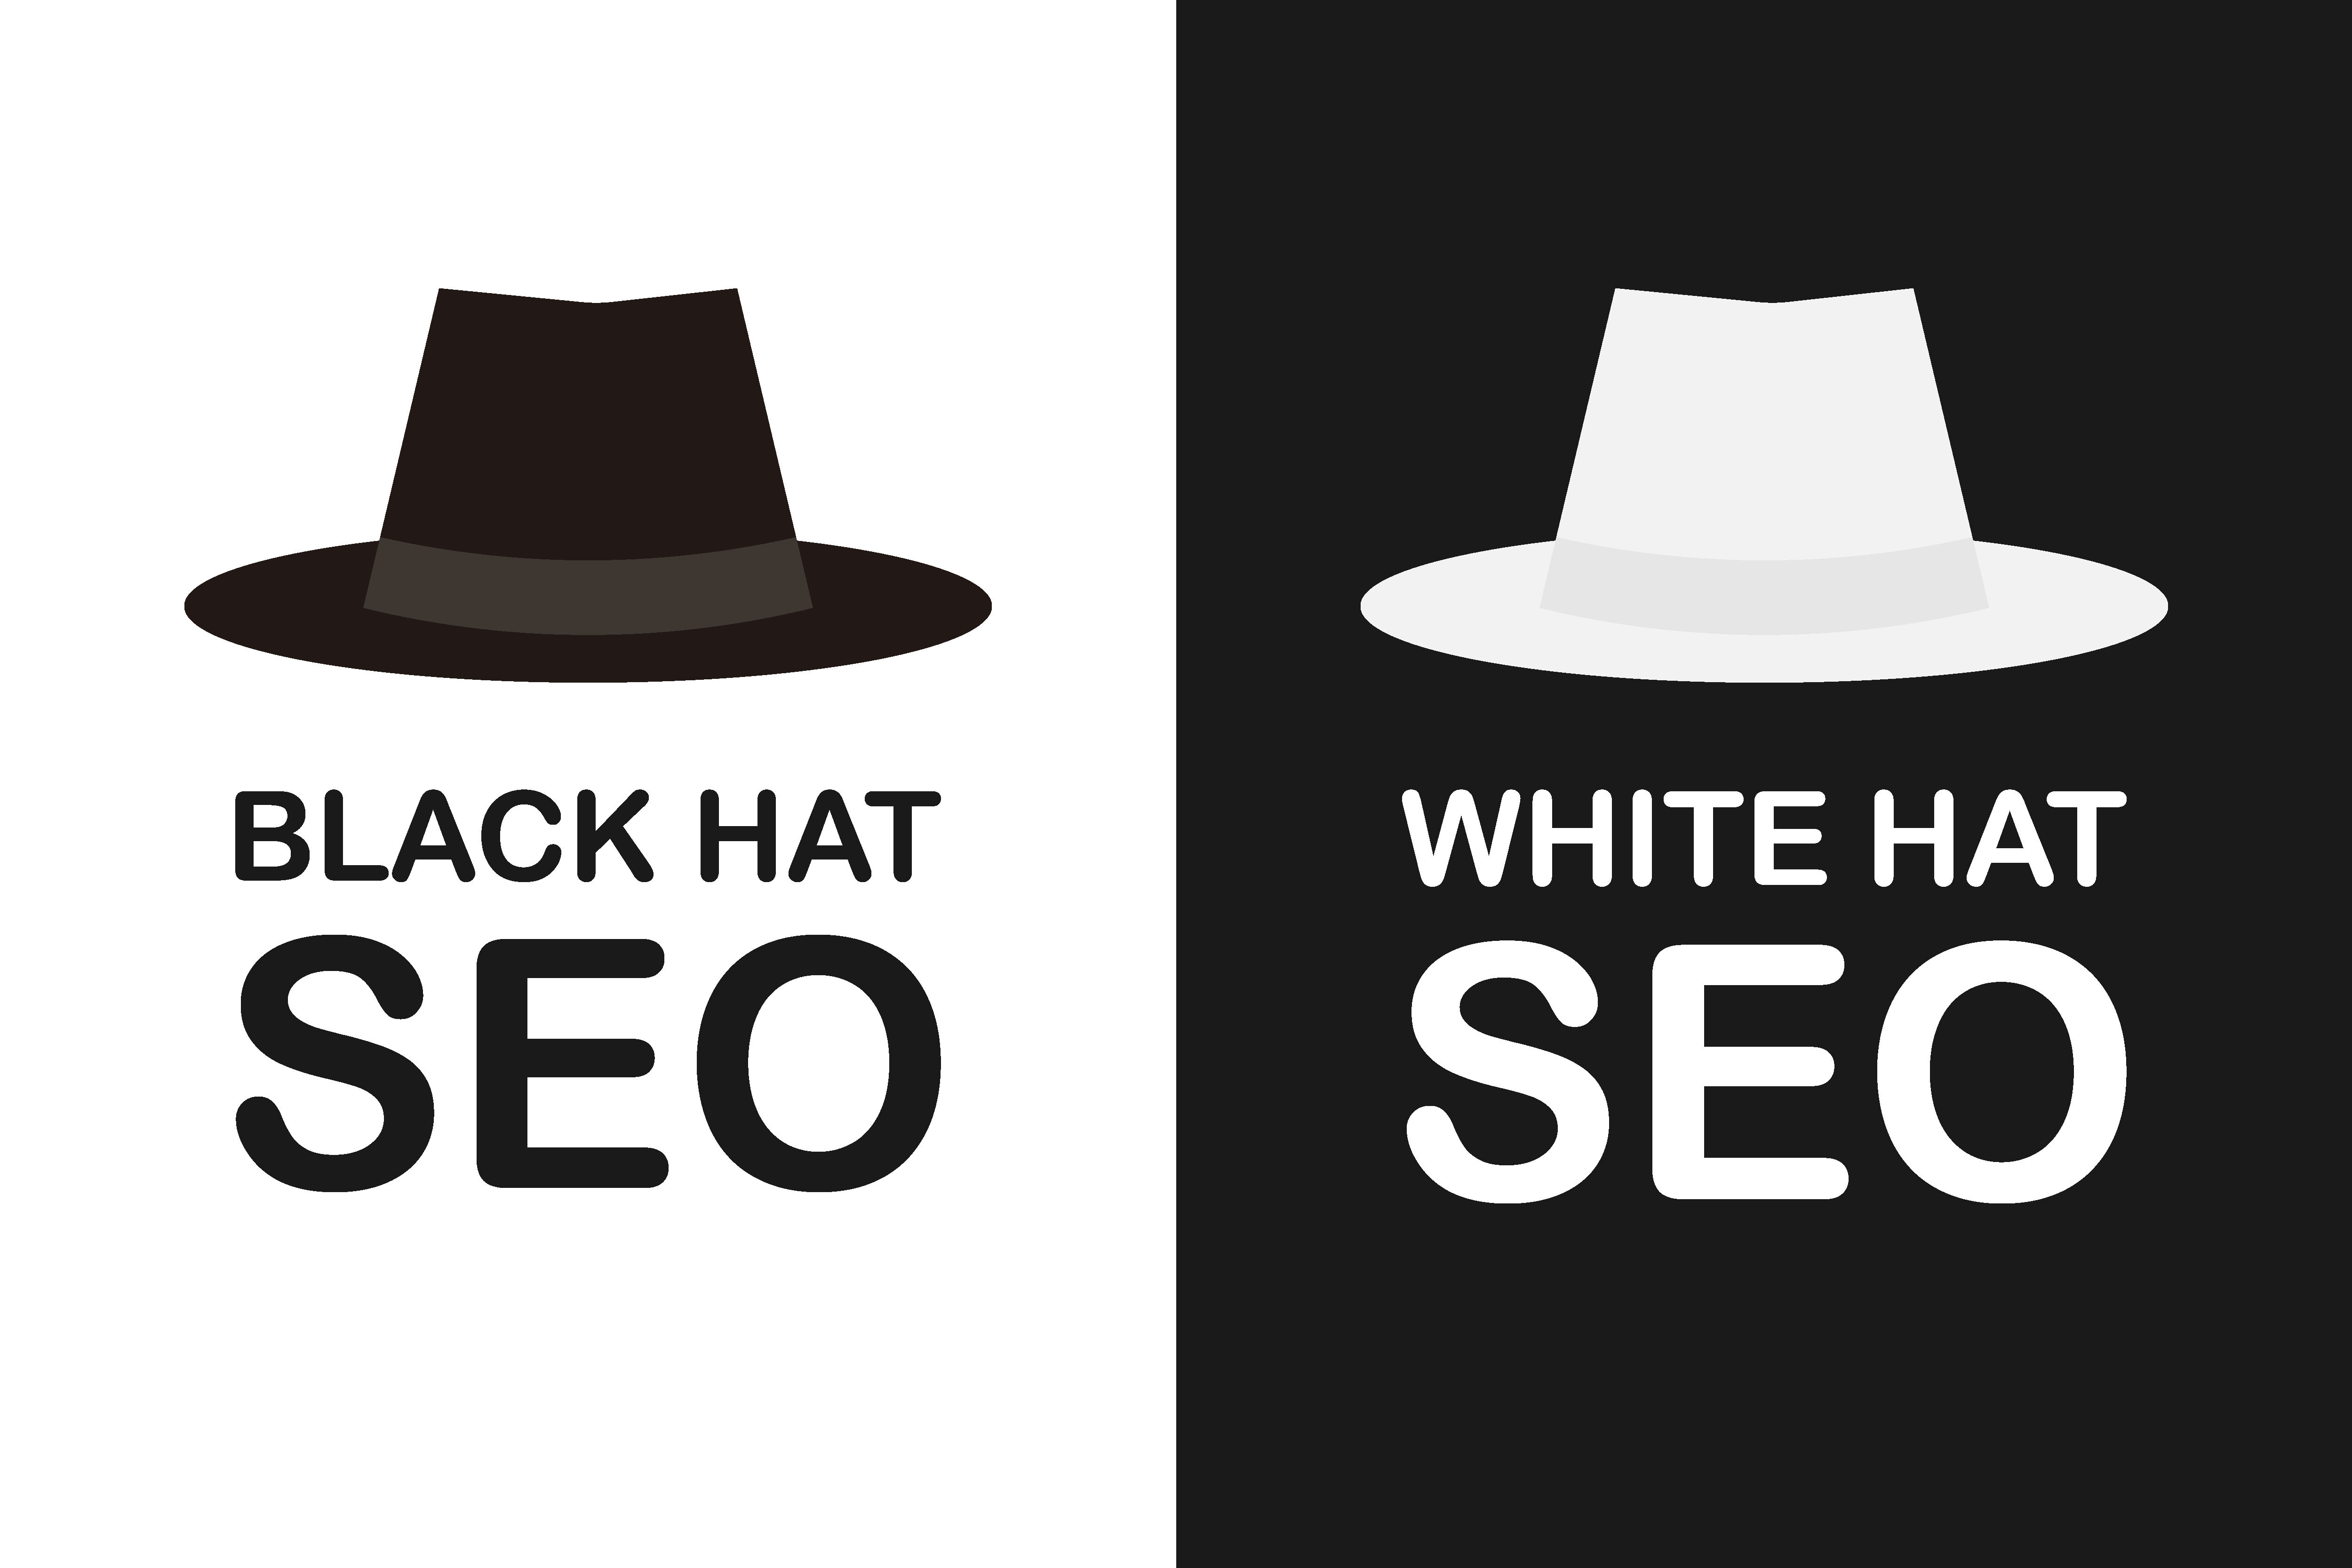 Black hat seo vs white hat SEO